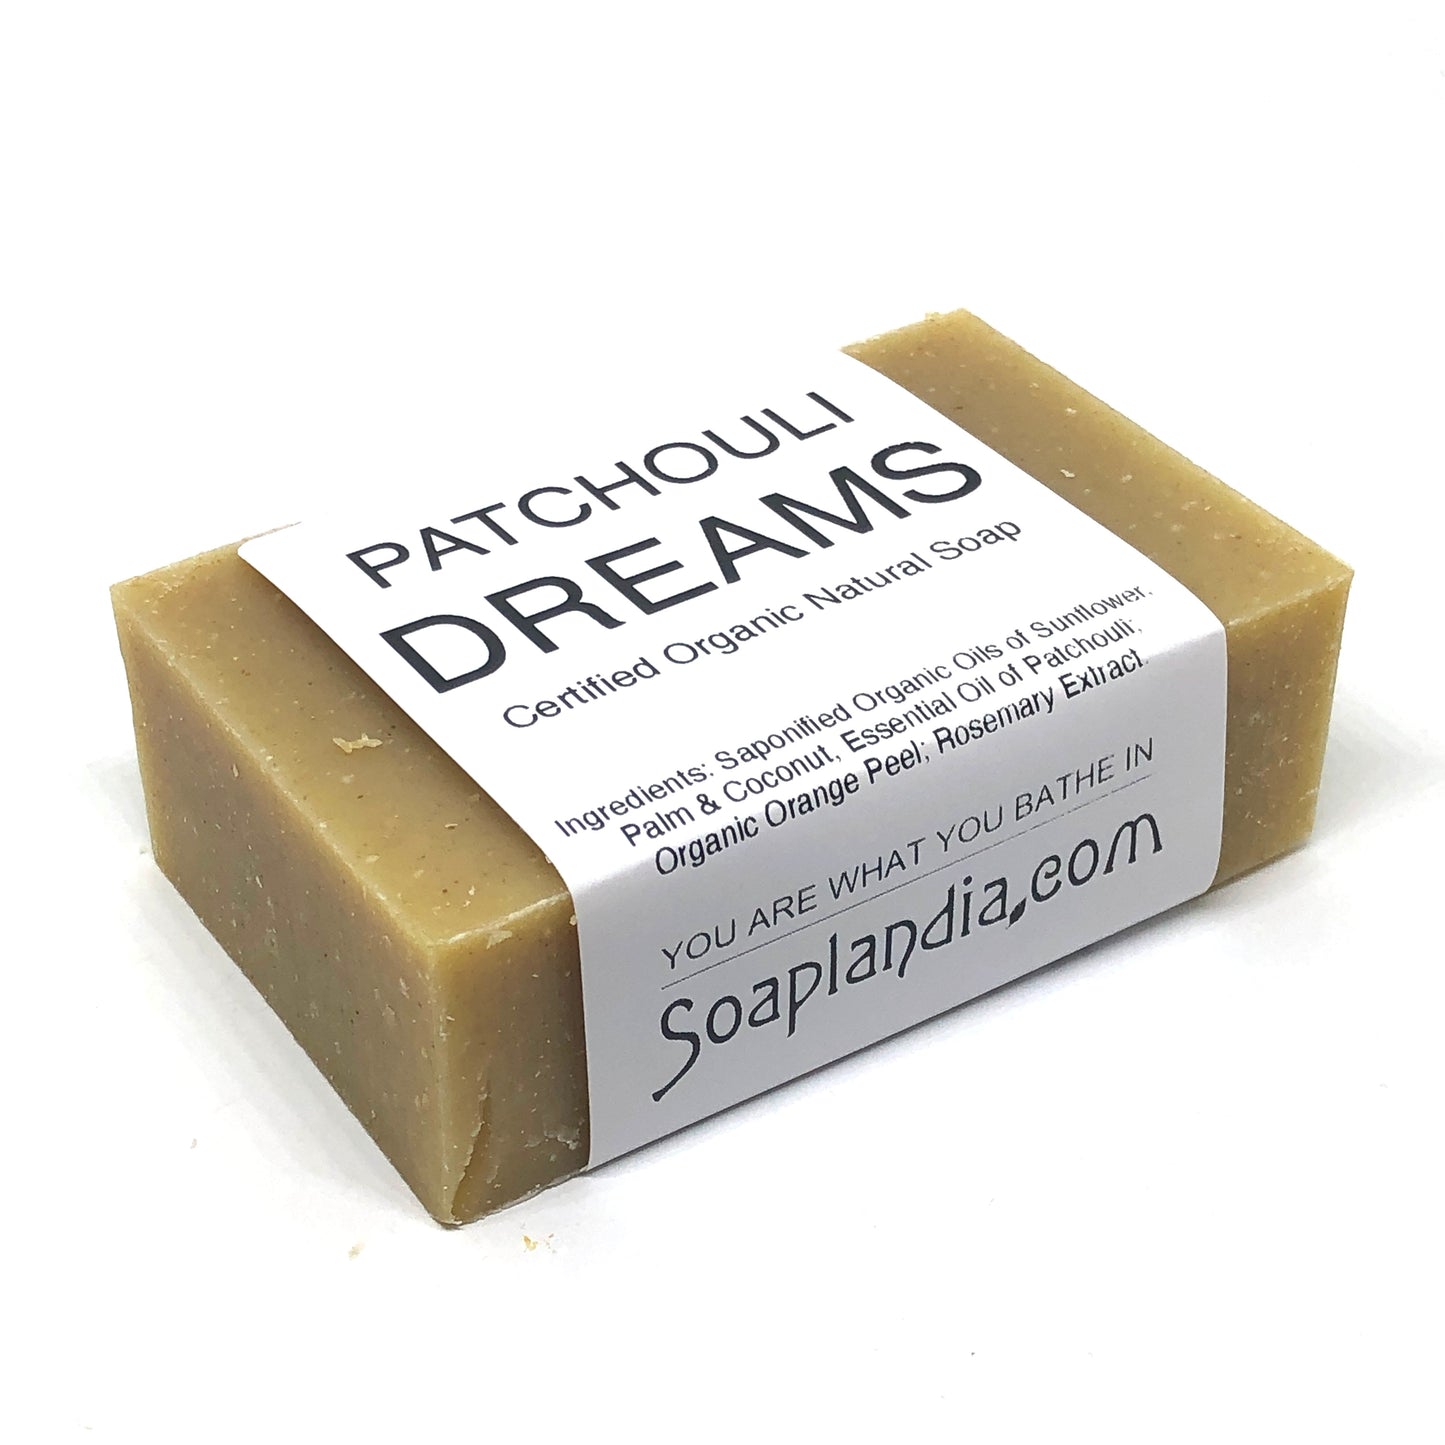 Patchouli Dreams Bar Soap, Organic